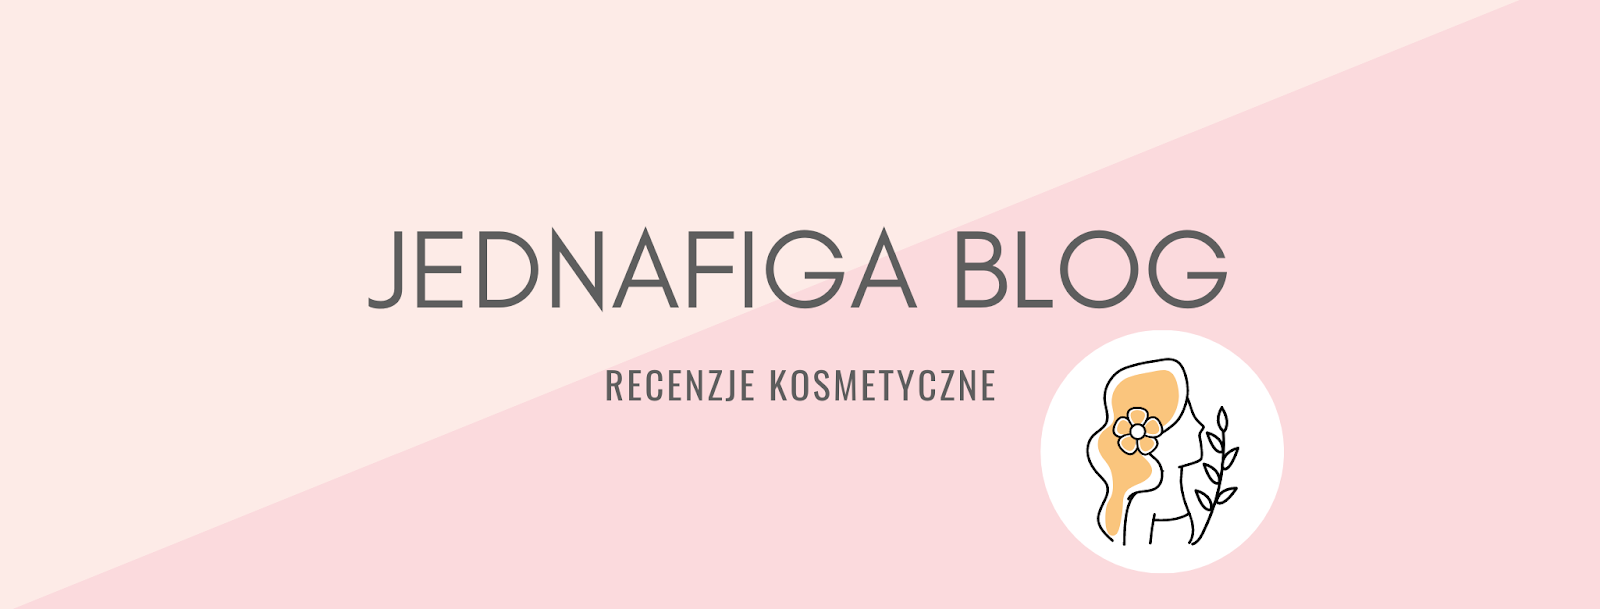 Jednafiga Blog